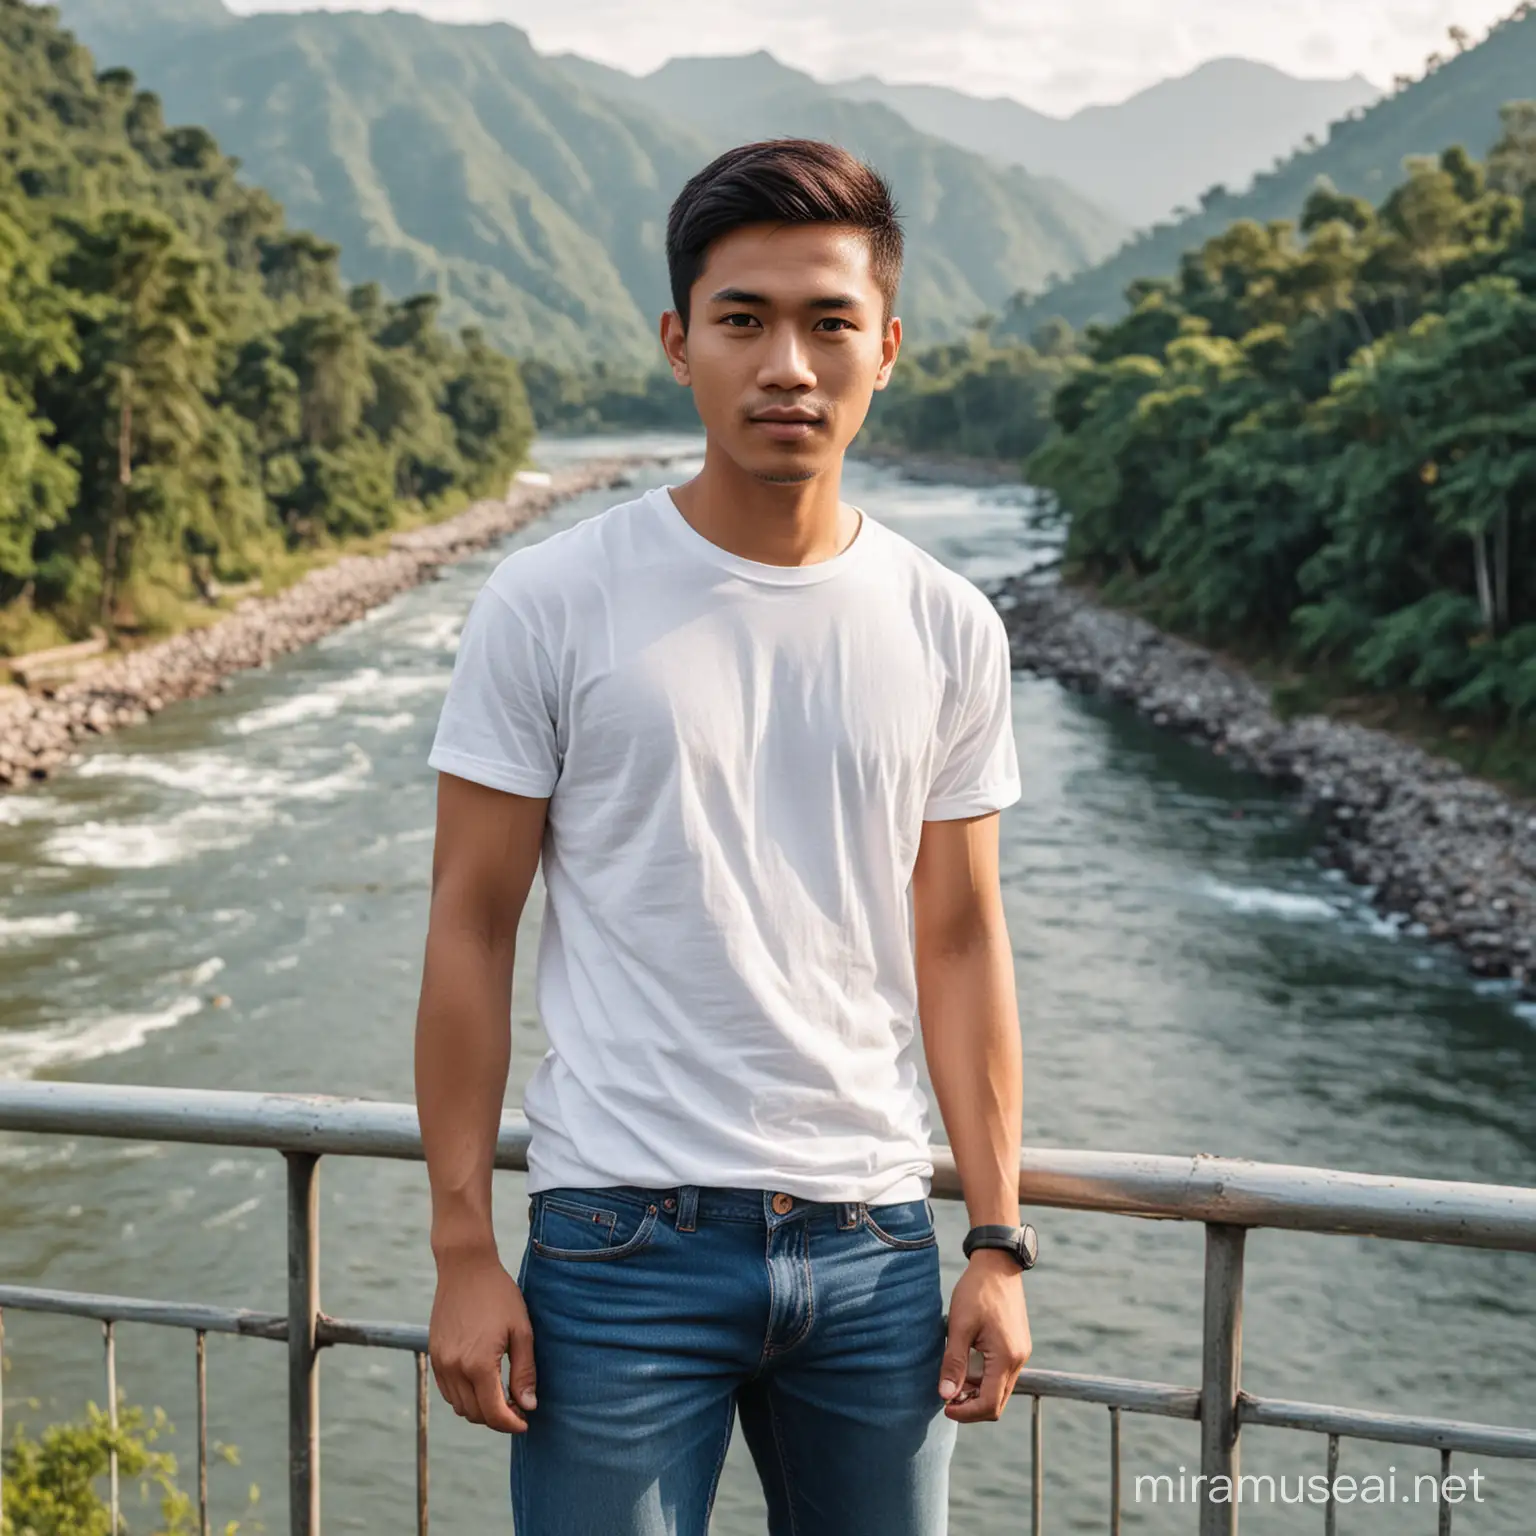 Pria infonesia umur 25 tahun,rambut pendek,baju kaos putih,celana blue jean,berdiri di jembatan,latar belakang sungai,pohon dan gunung